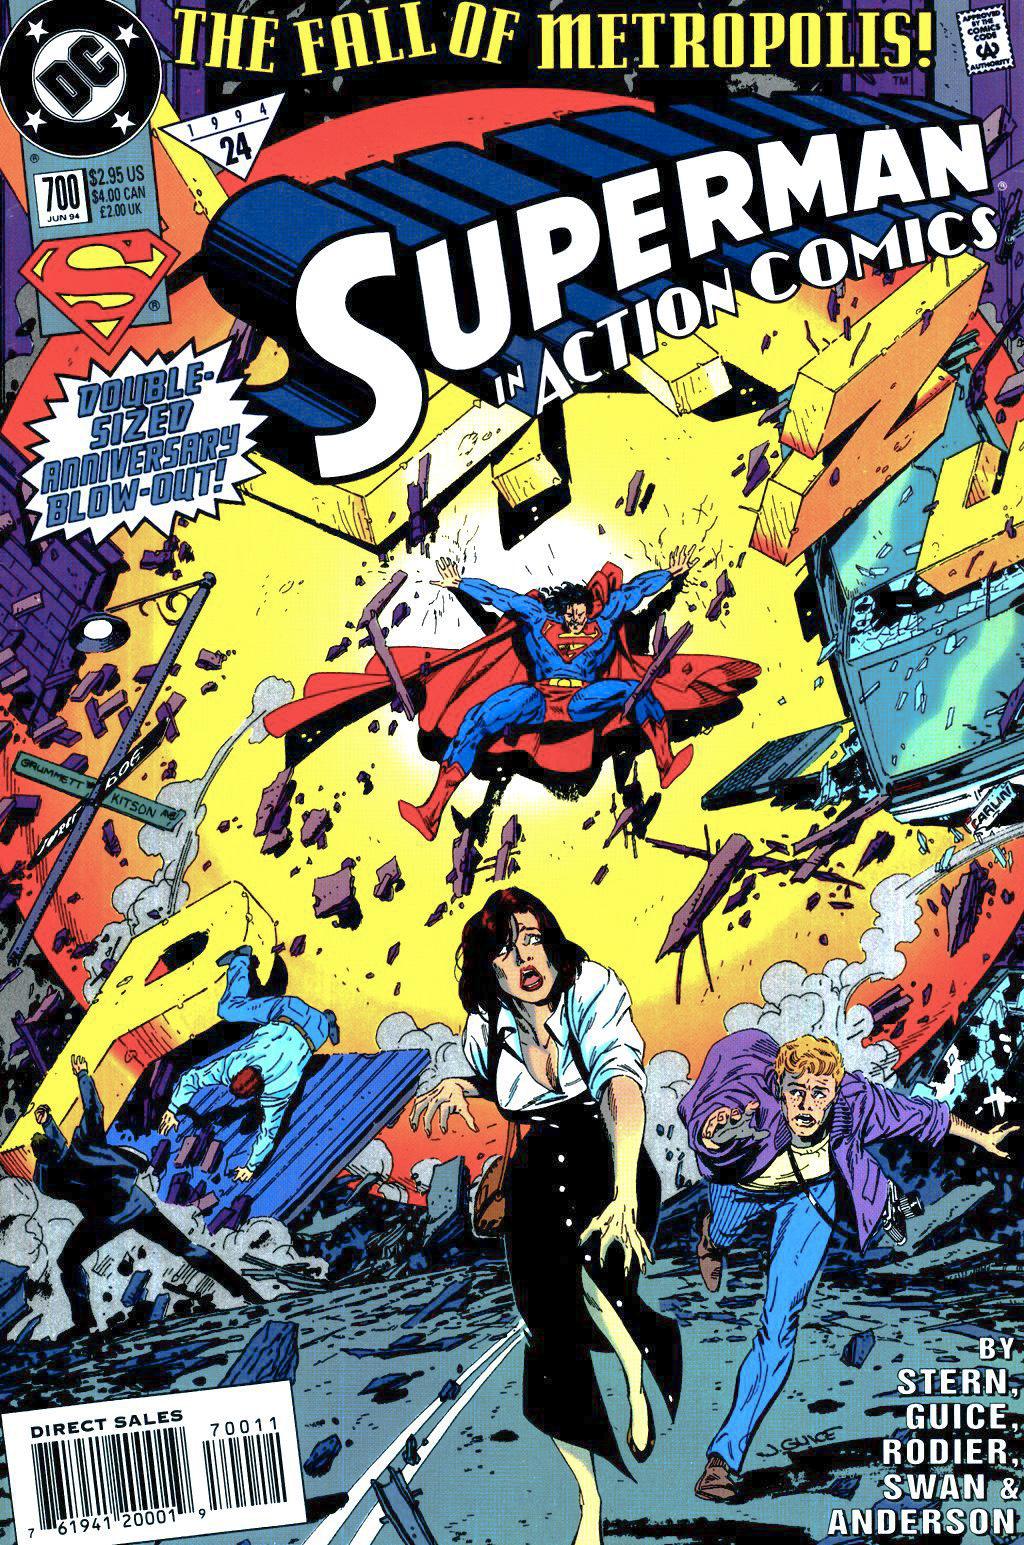 Action Comics Vol. 1 #700